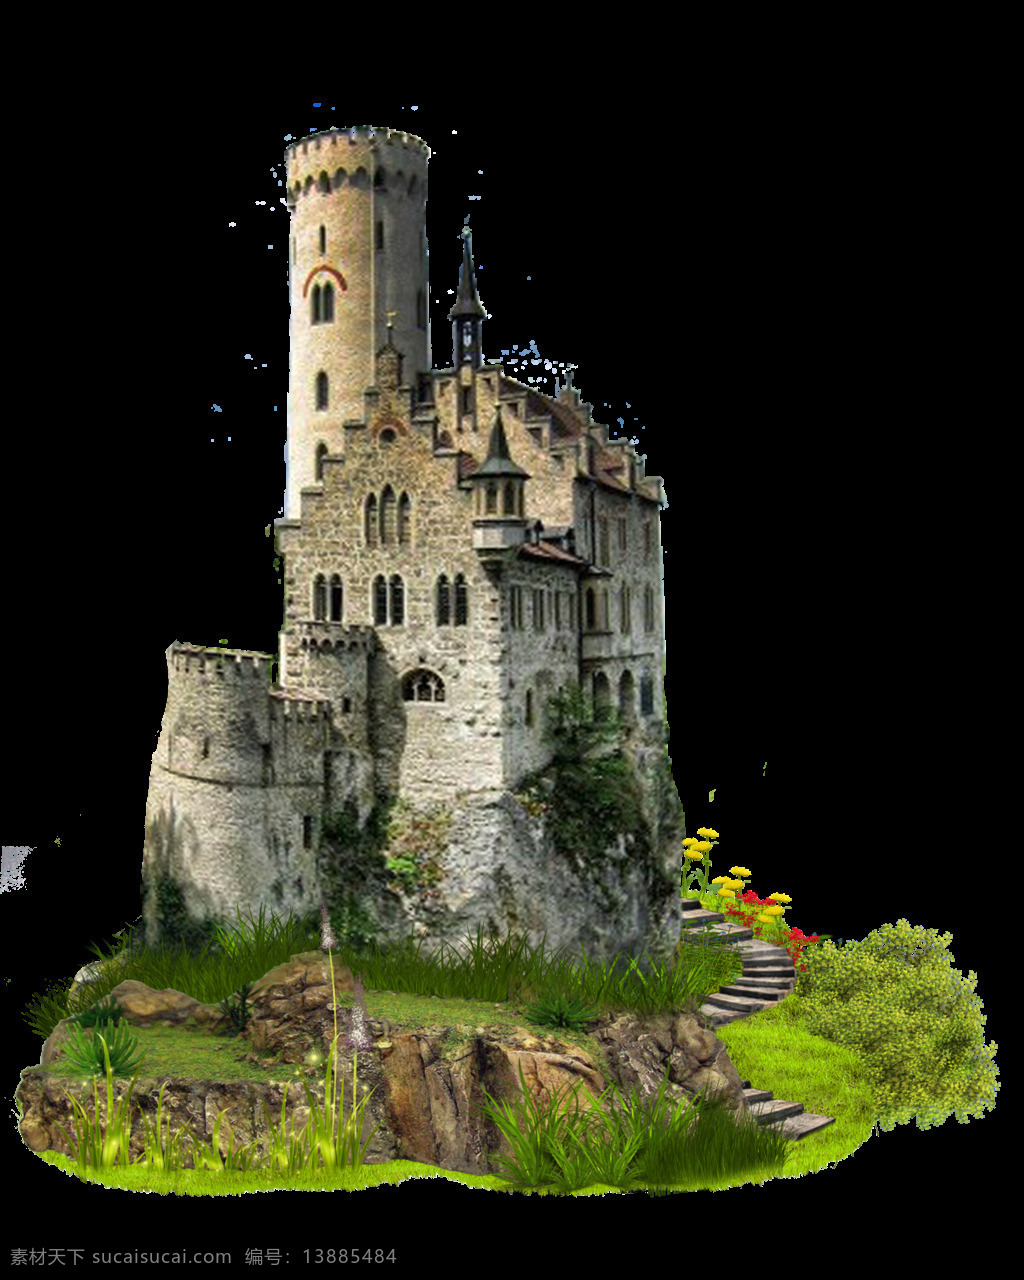 古朴 城堡 免 抠 透明 图 层 梦幻 童话 简 笔画 梦幻宫殿城堡 水晶城堡 冰雪城堡 世界 上 最美 童话城堡 城堡建筑 魔幻城堡 城堡素材 古代城堡